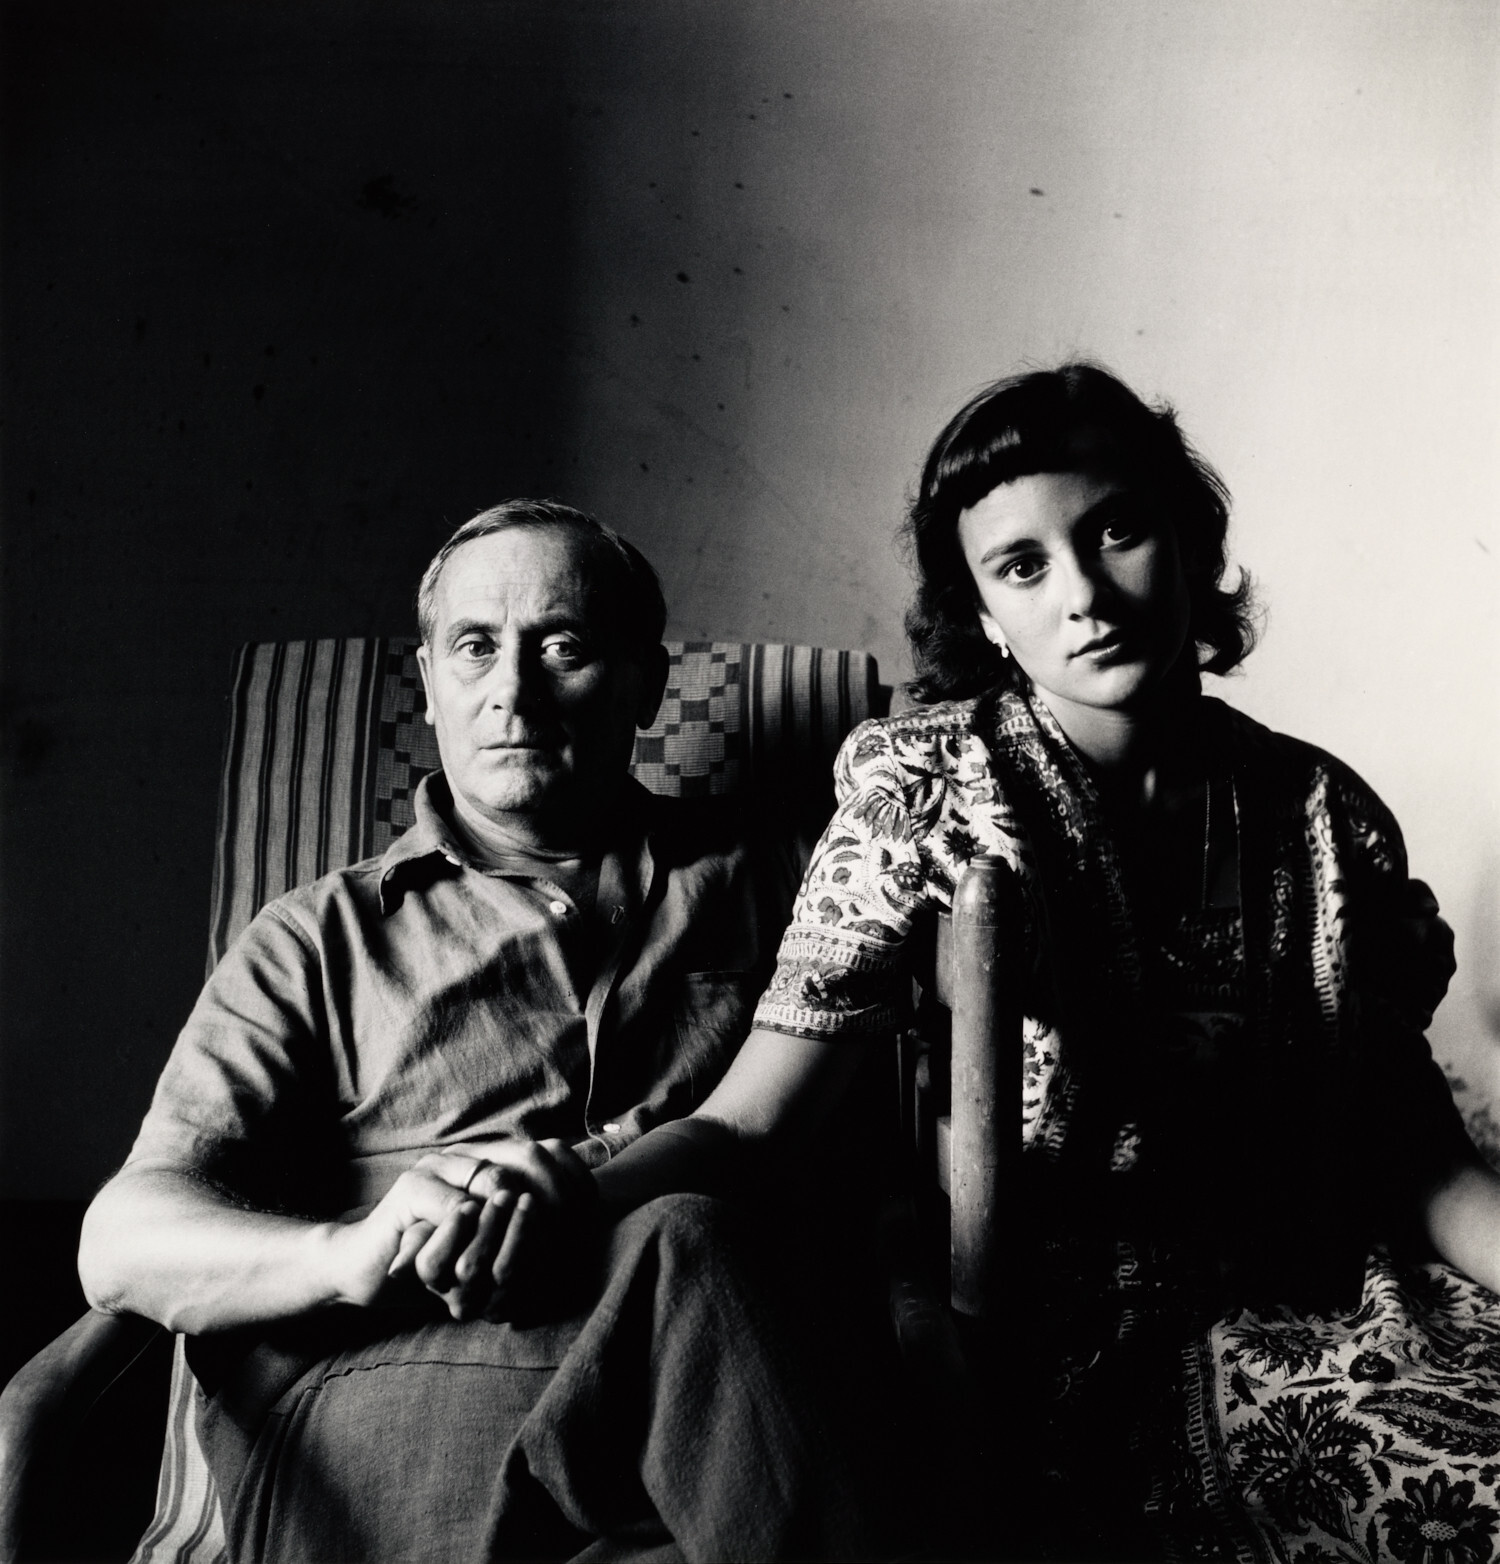 Миро и его дочь Долорес, Таррагона, Испания, 1948 год. Фотограф Ирвин Пенн